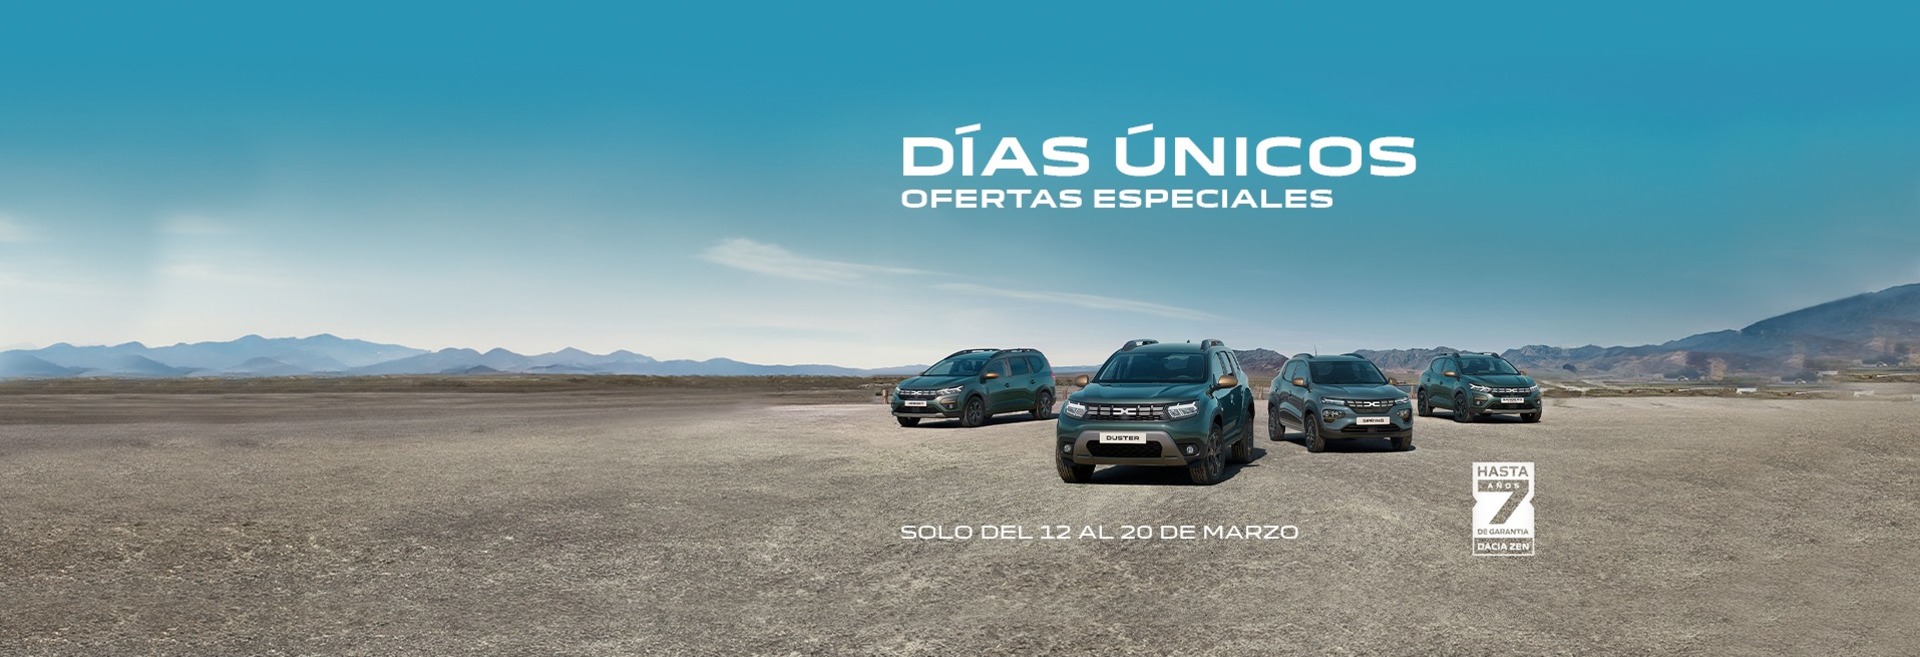 Días únicos Dacia